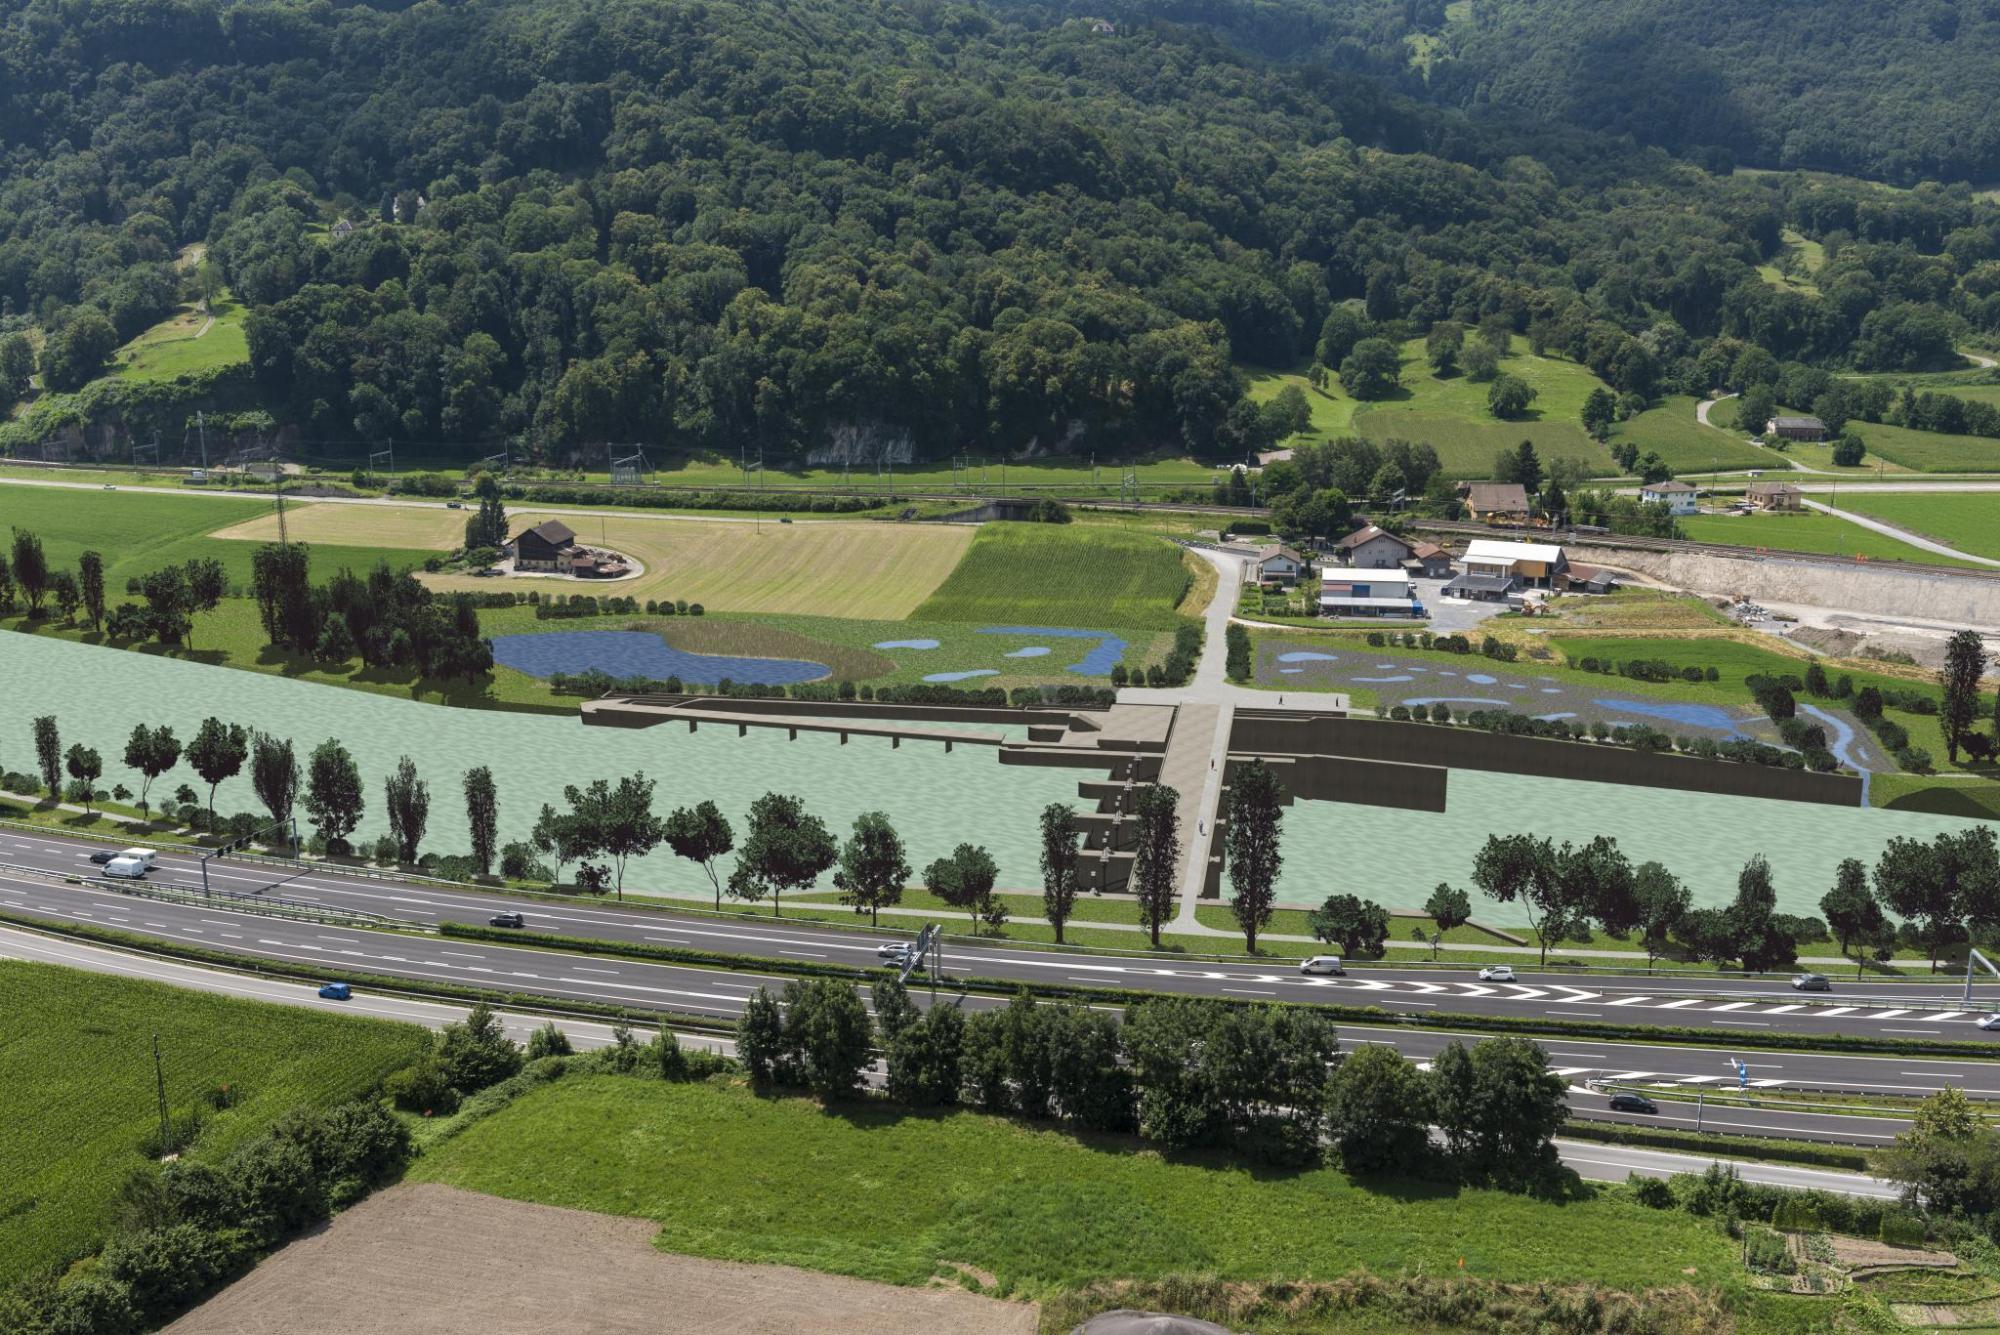 Le barrage sur le Rhône, tel qu'il est imaginé par ses concepteurs.